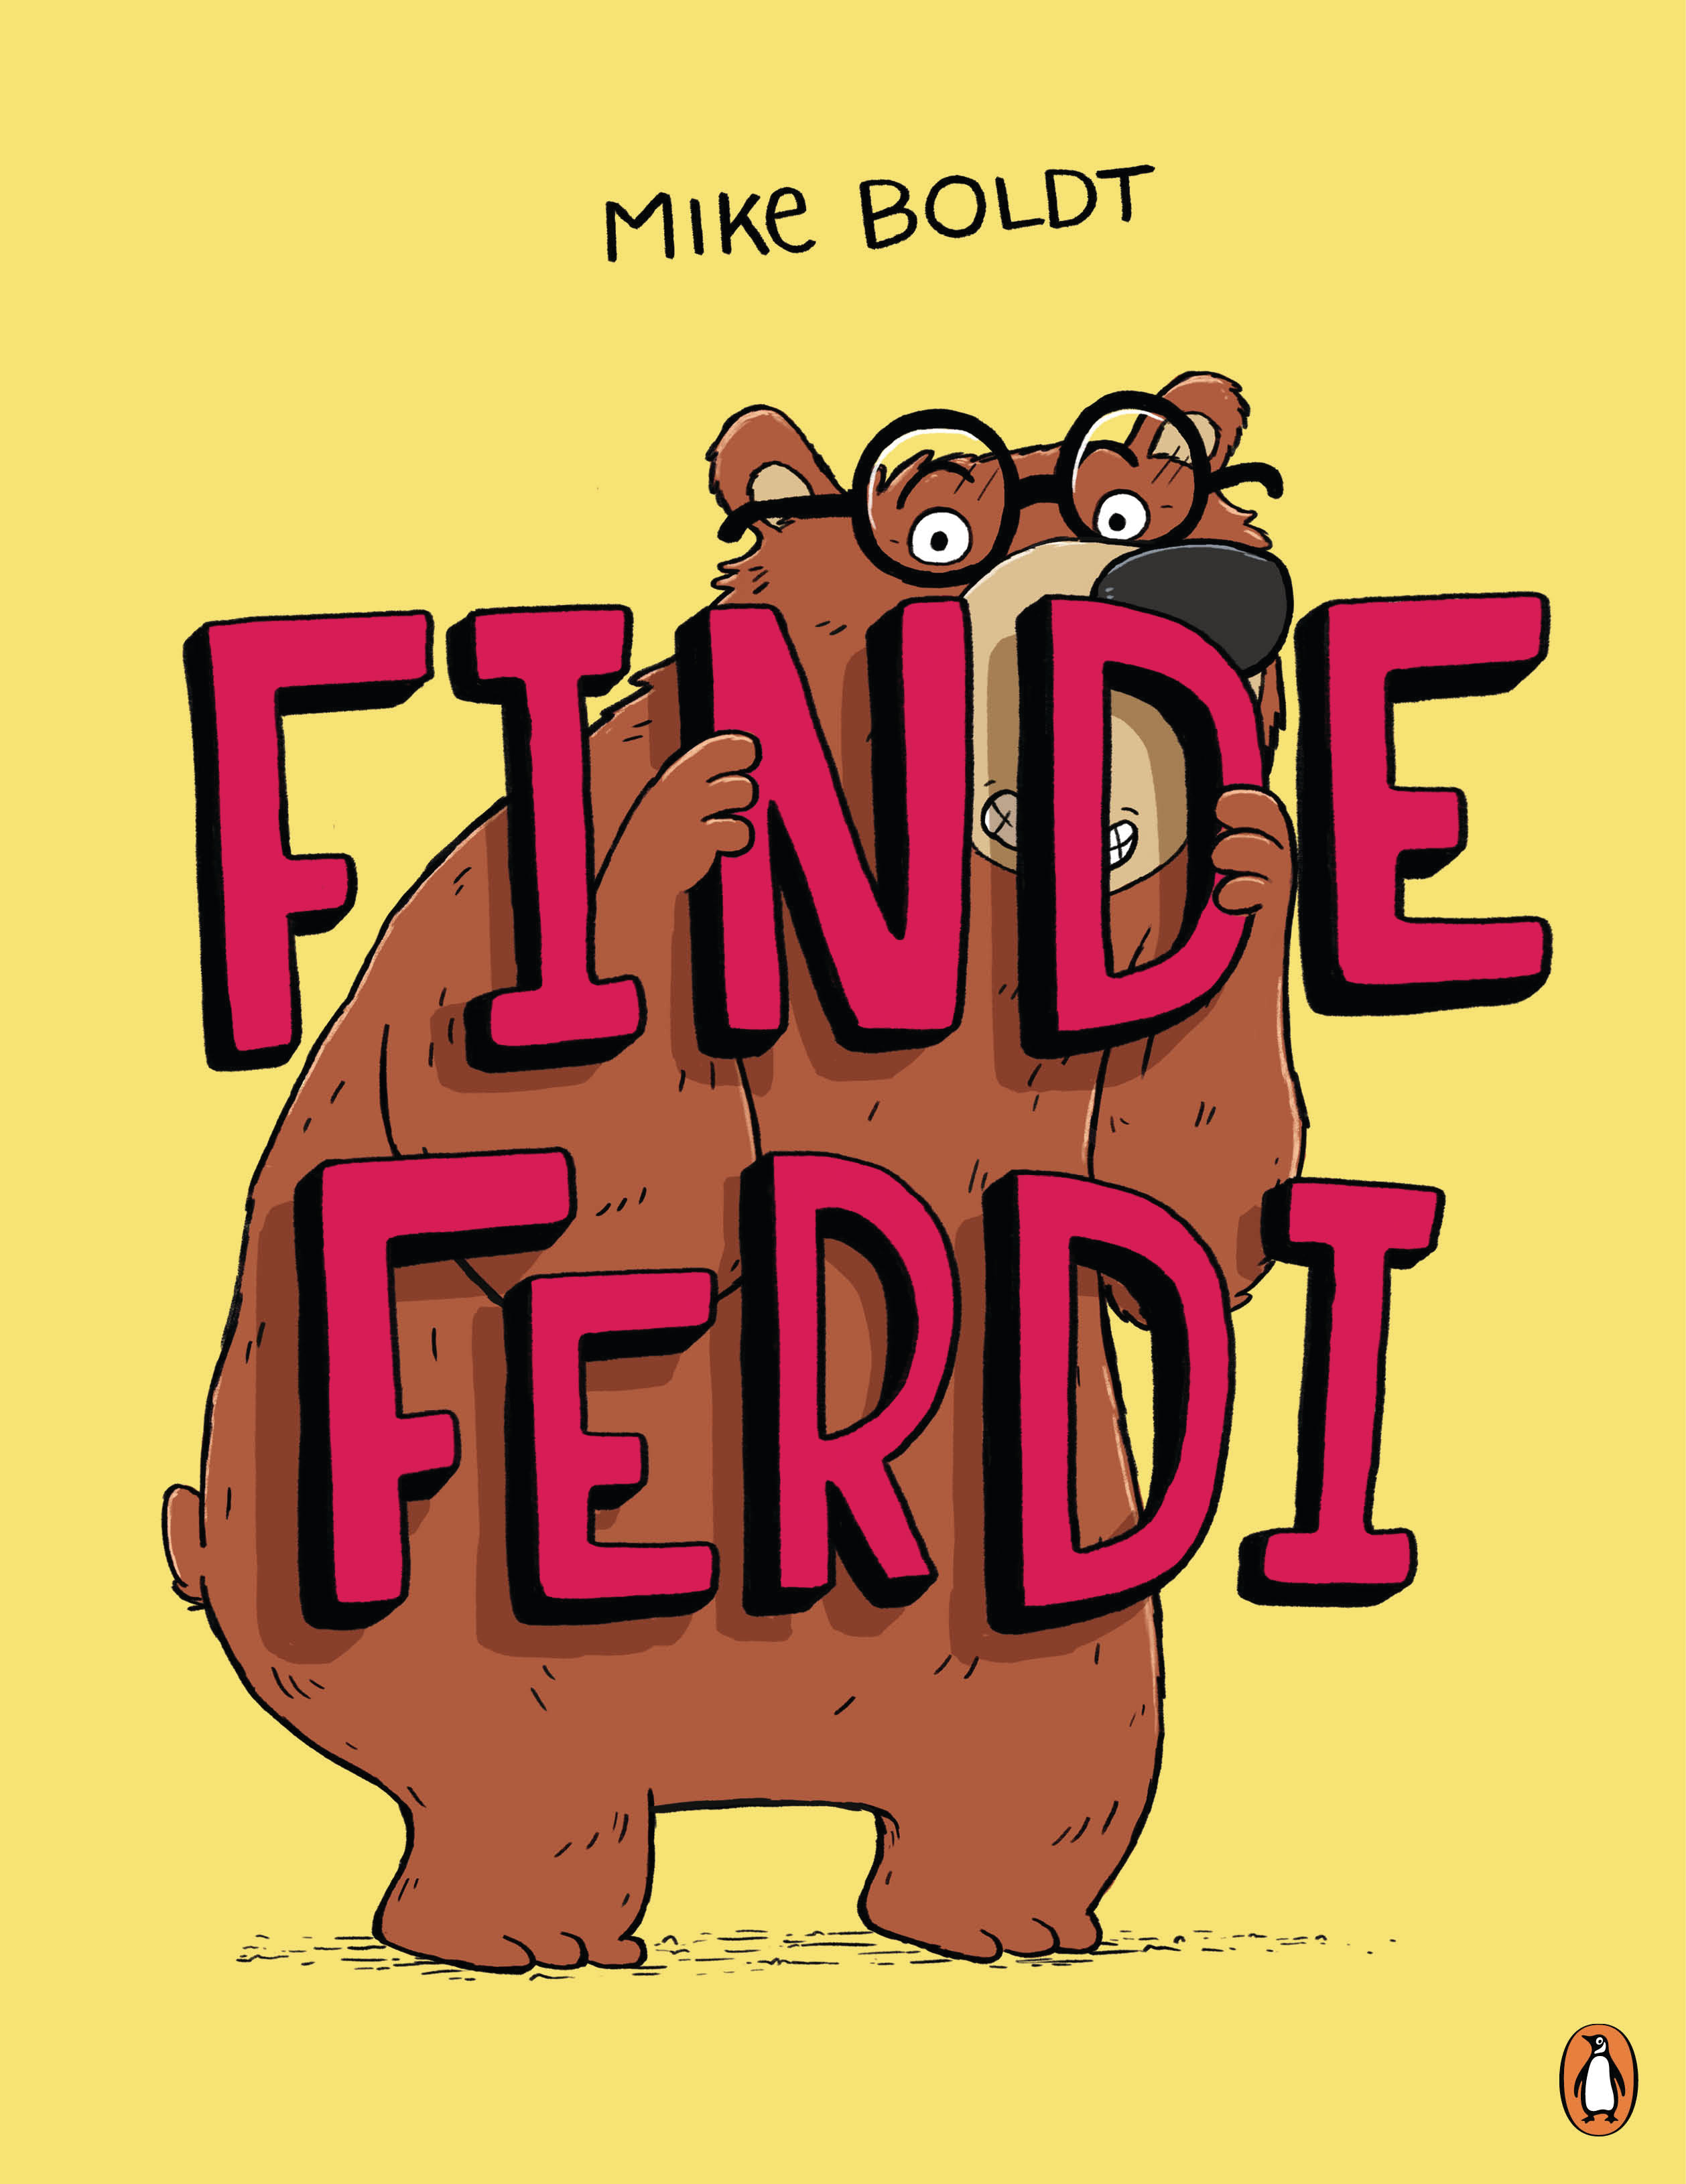 Buchcover, Finde Ferdi, Penguin Junior, Random House